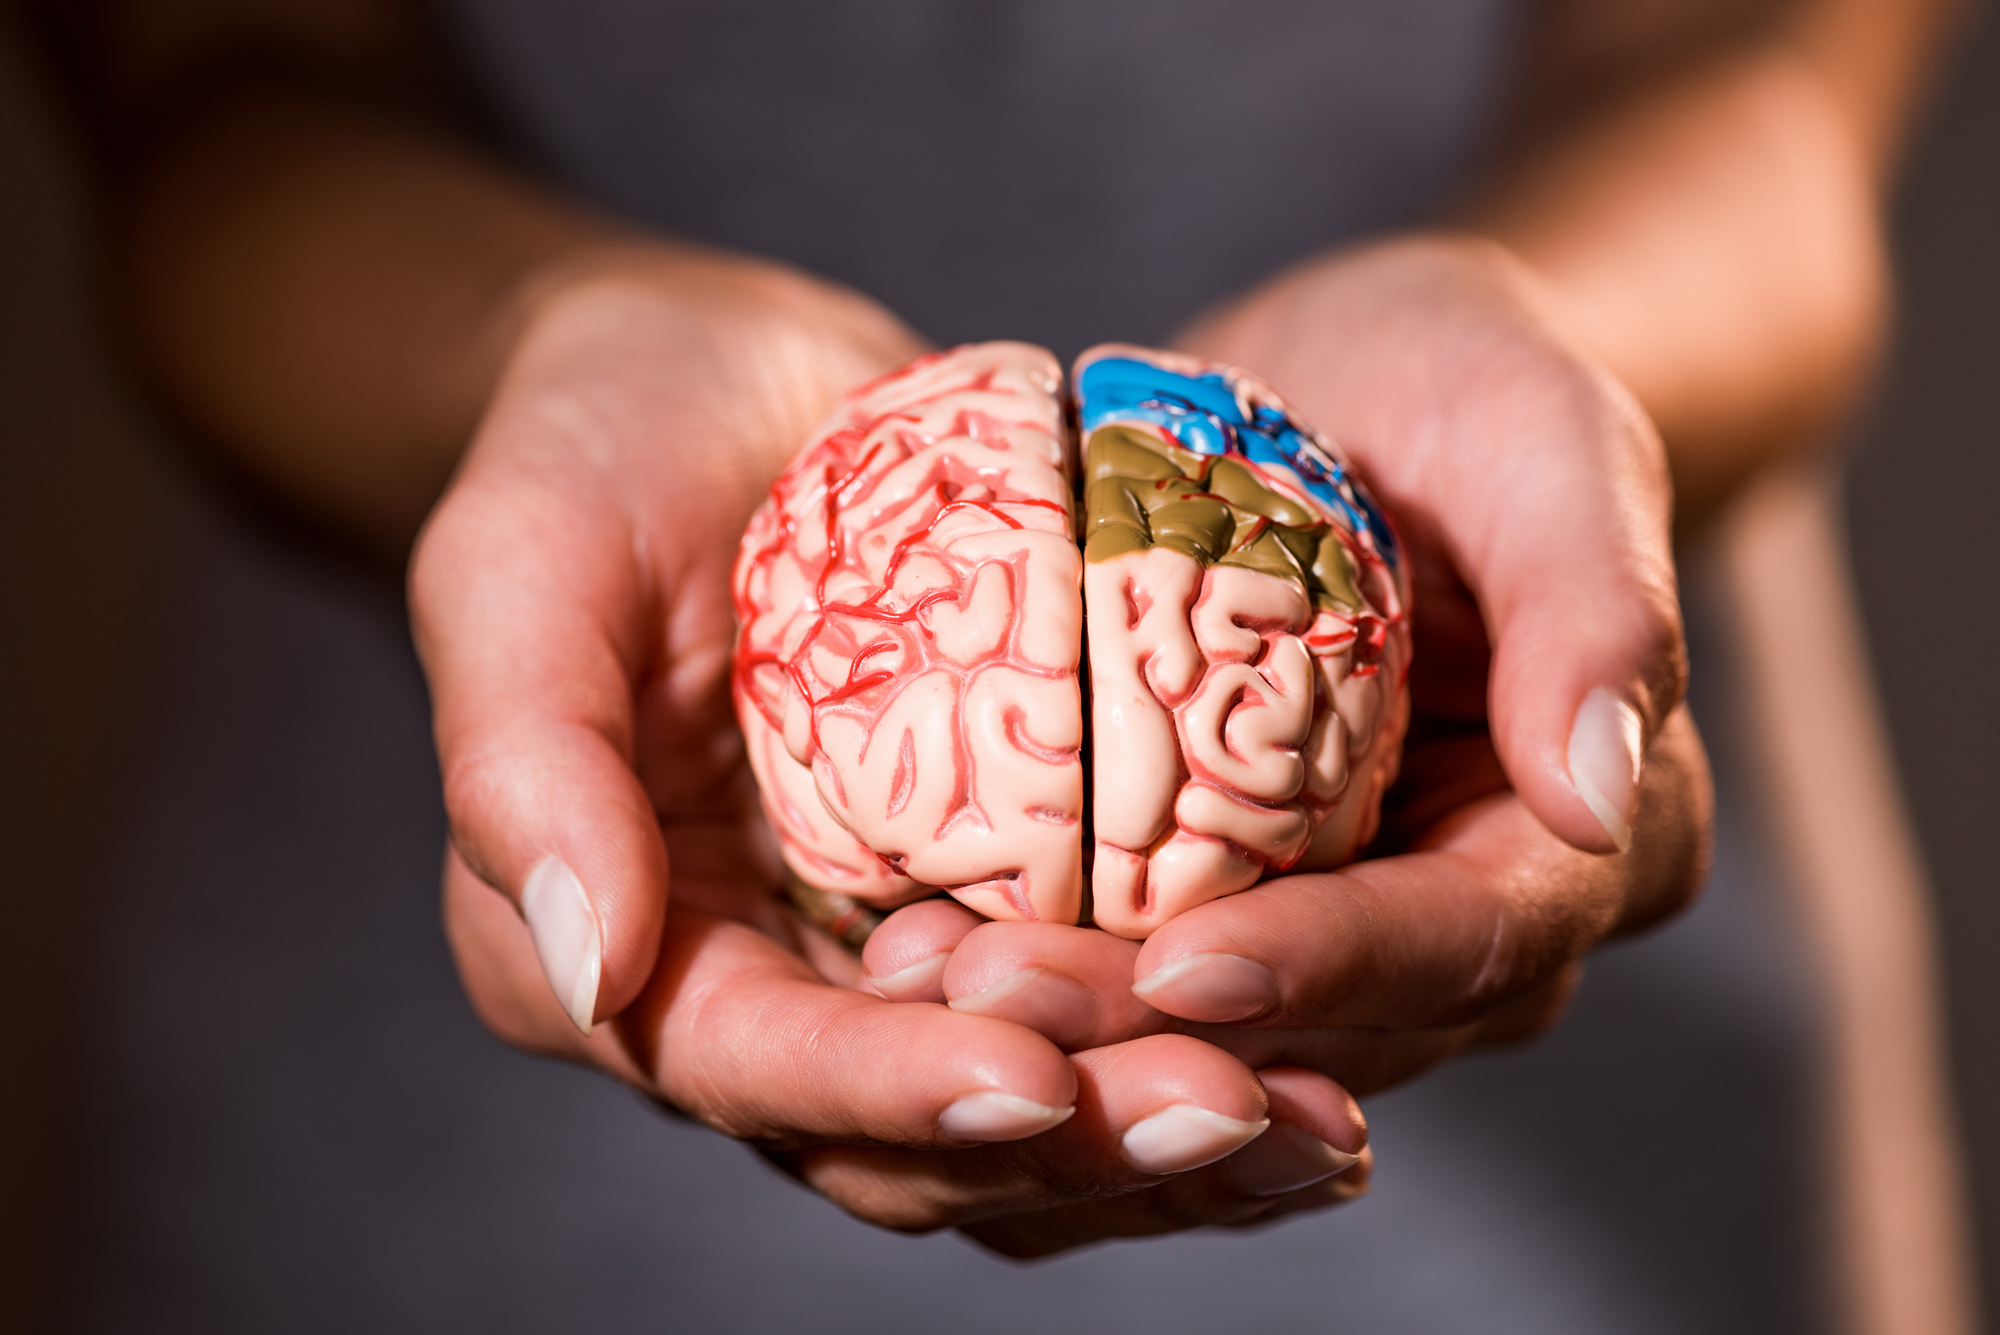 Simulação de um cérebro humano sendo segurando por mãos humanas